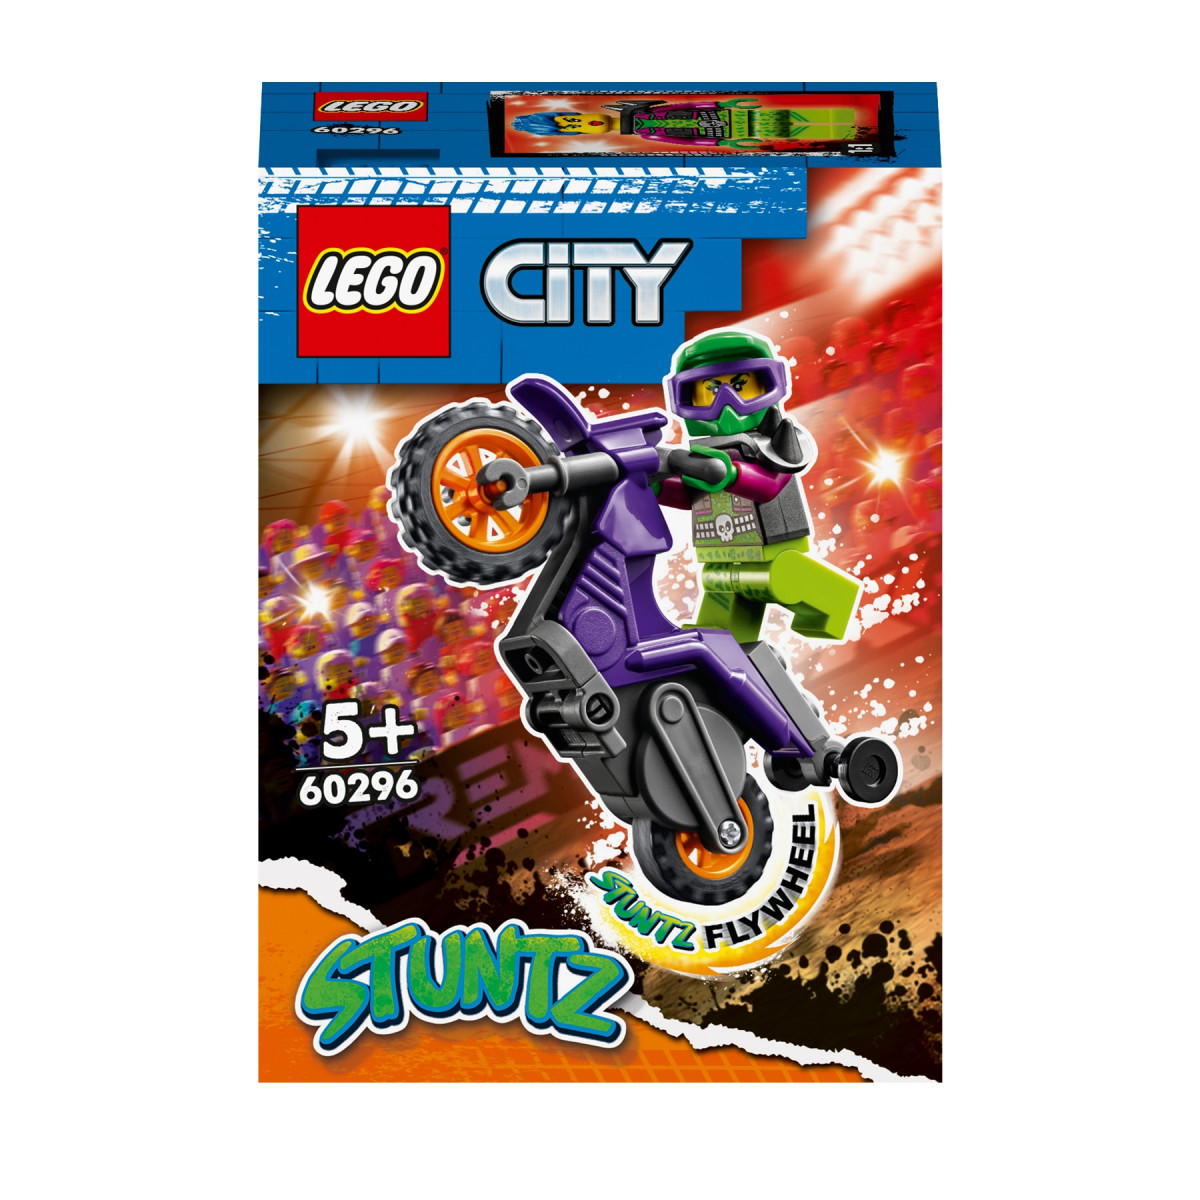 LEGO City 60296 Stuntz Wheelie Stunt Bike Toy Set